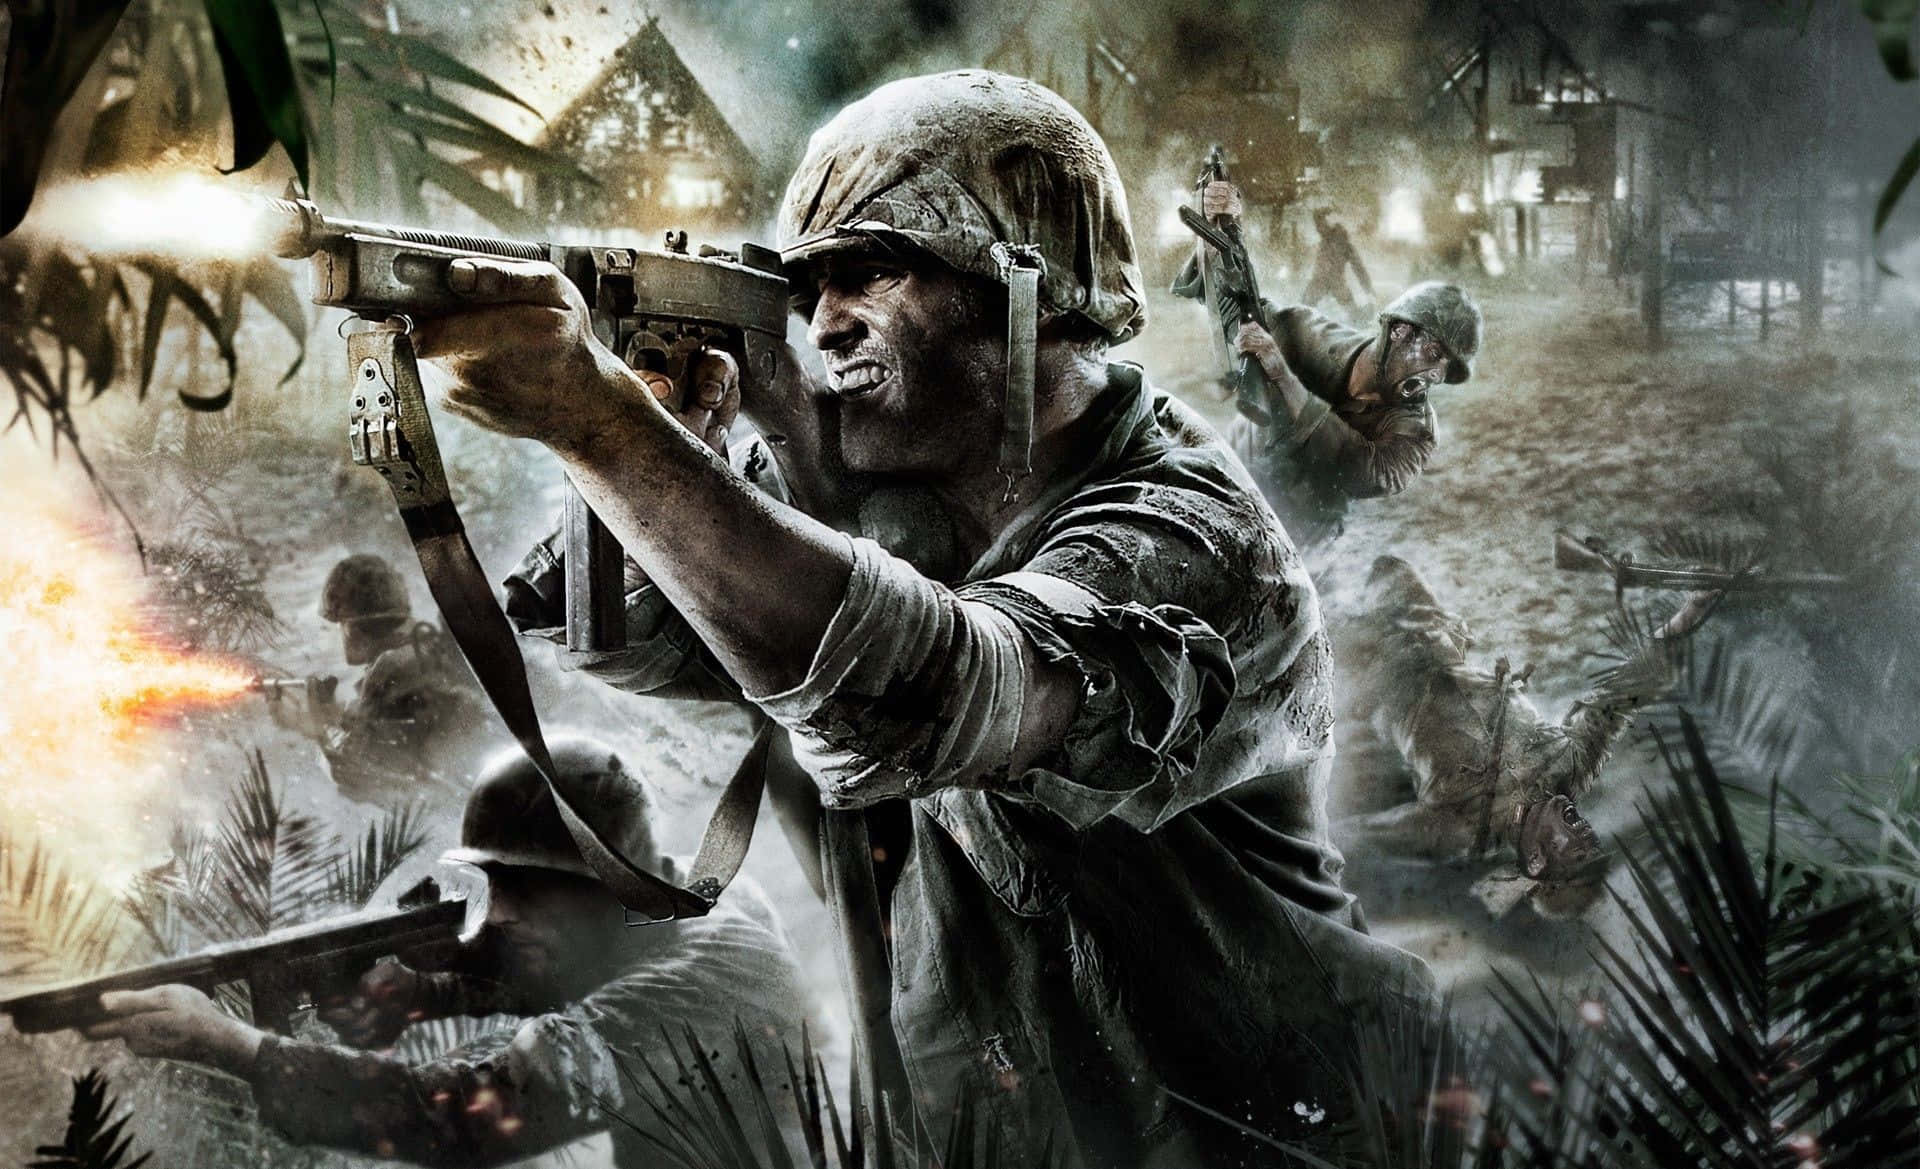 Intense Call of Duty Battle Action Wallpaper